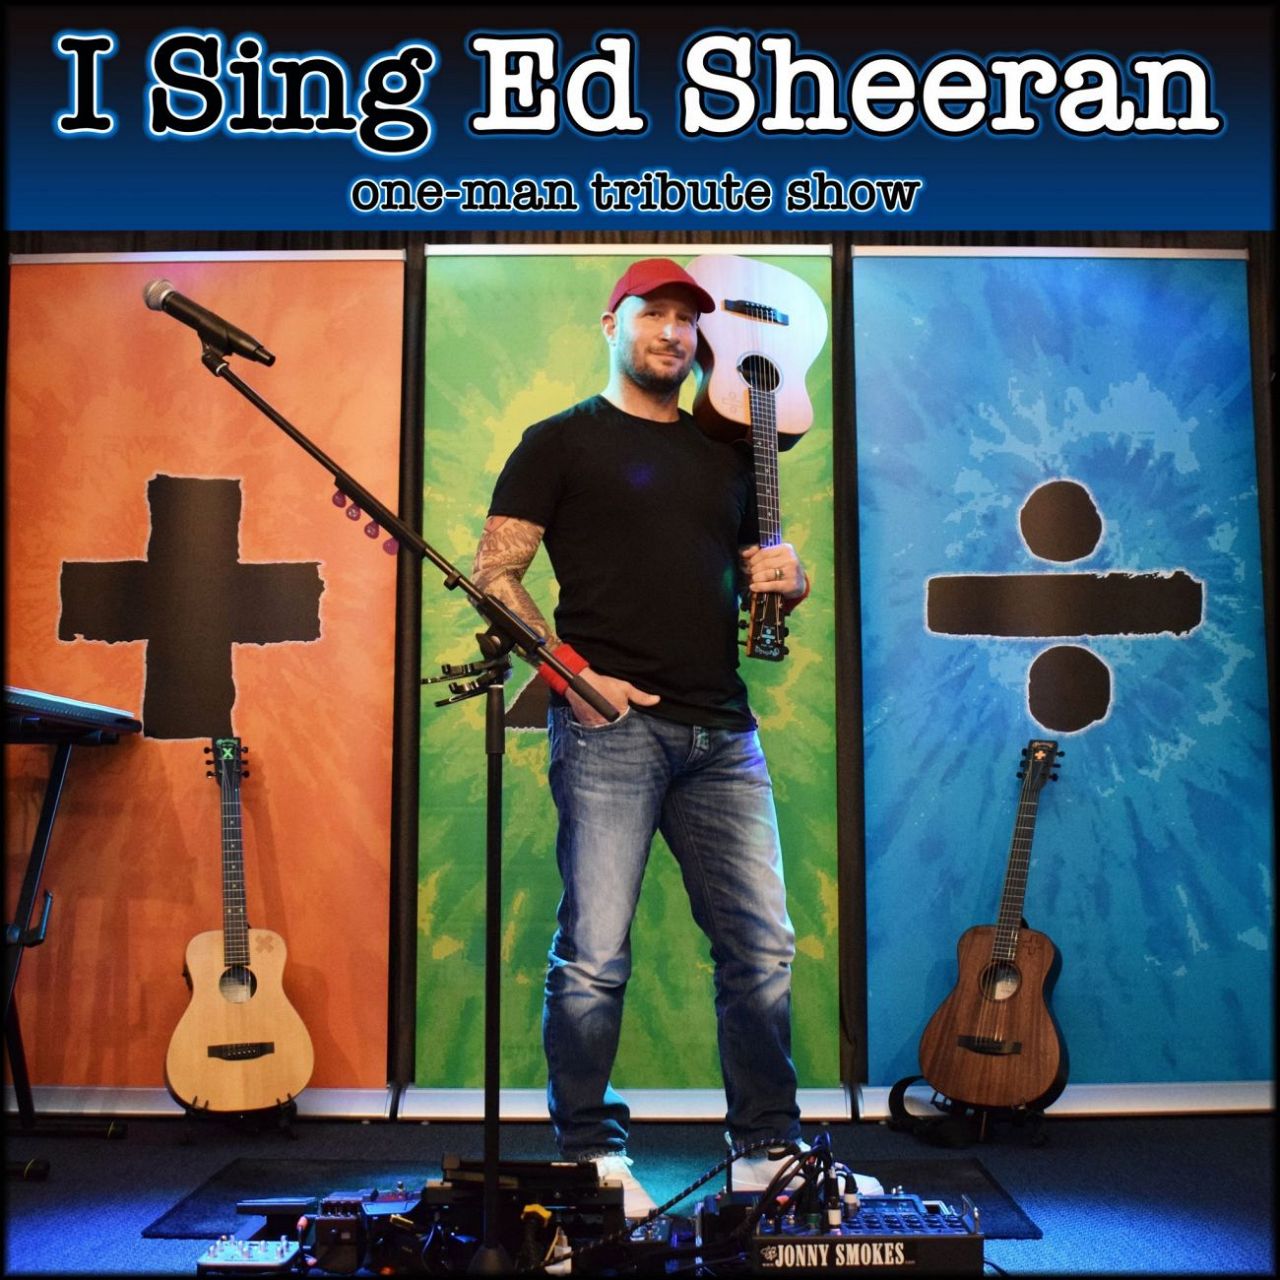 I sing Ed Sheeran